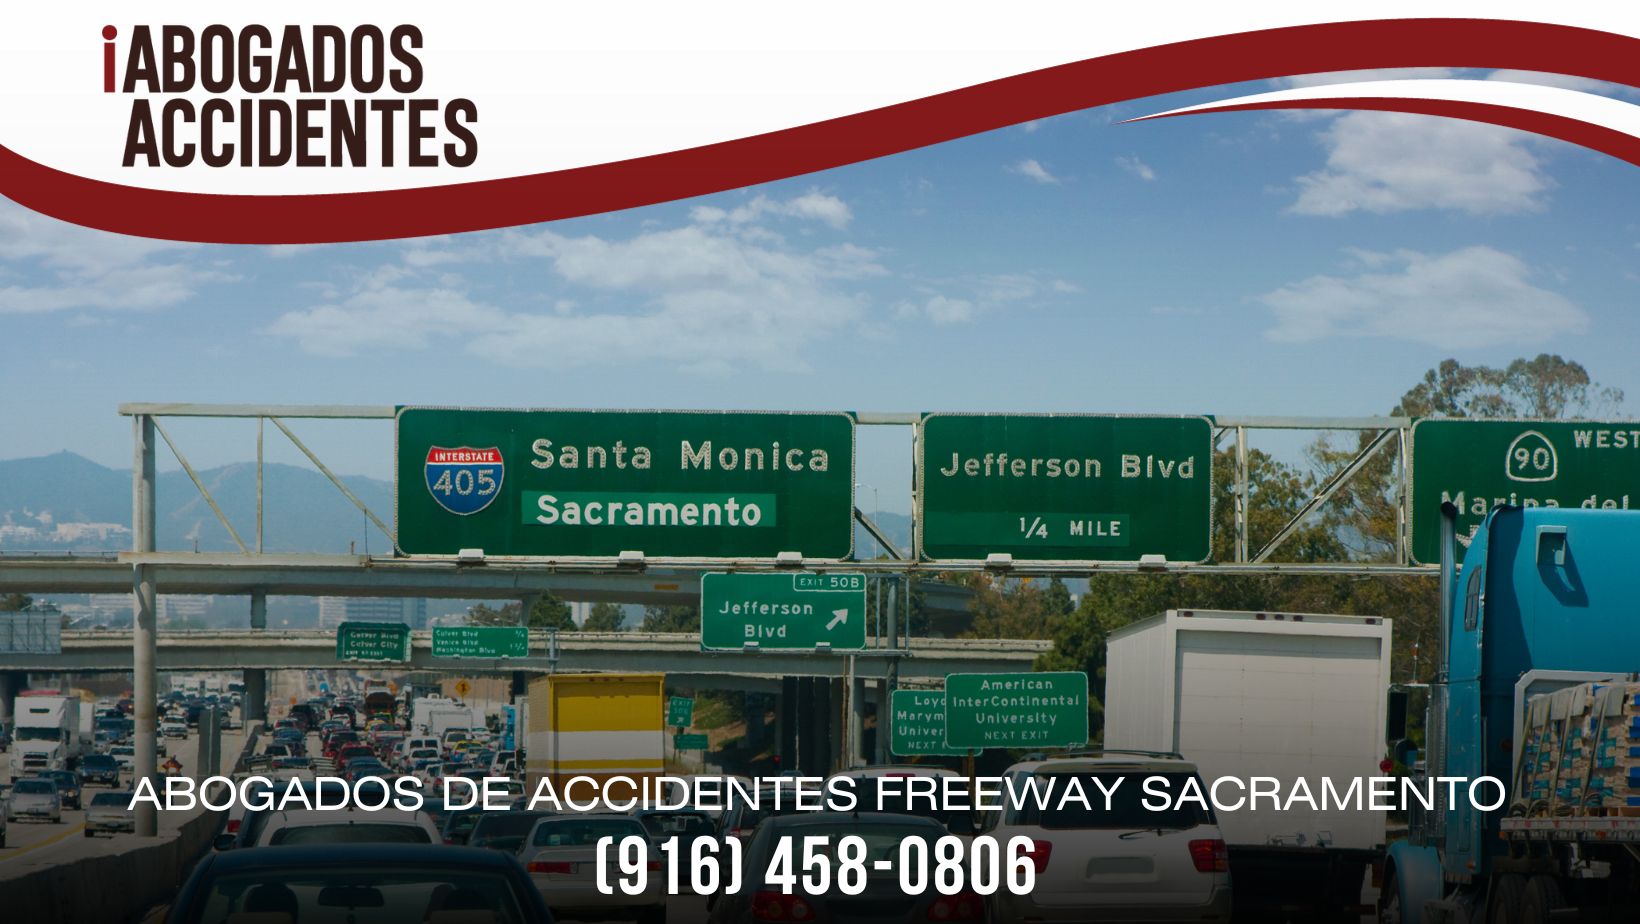 Abogados de Accidentes Freeway Sacramento